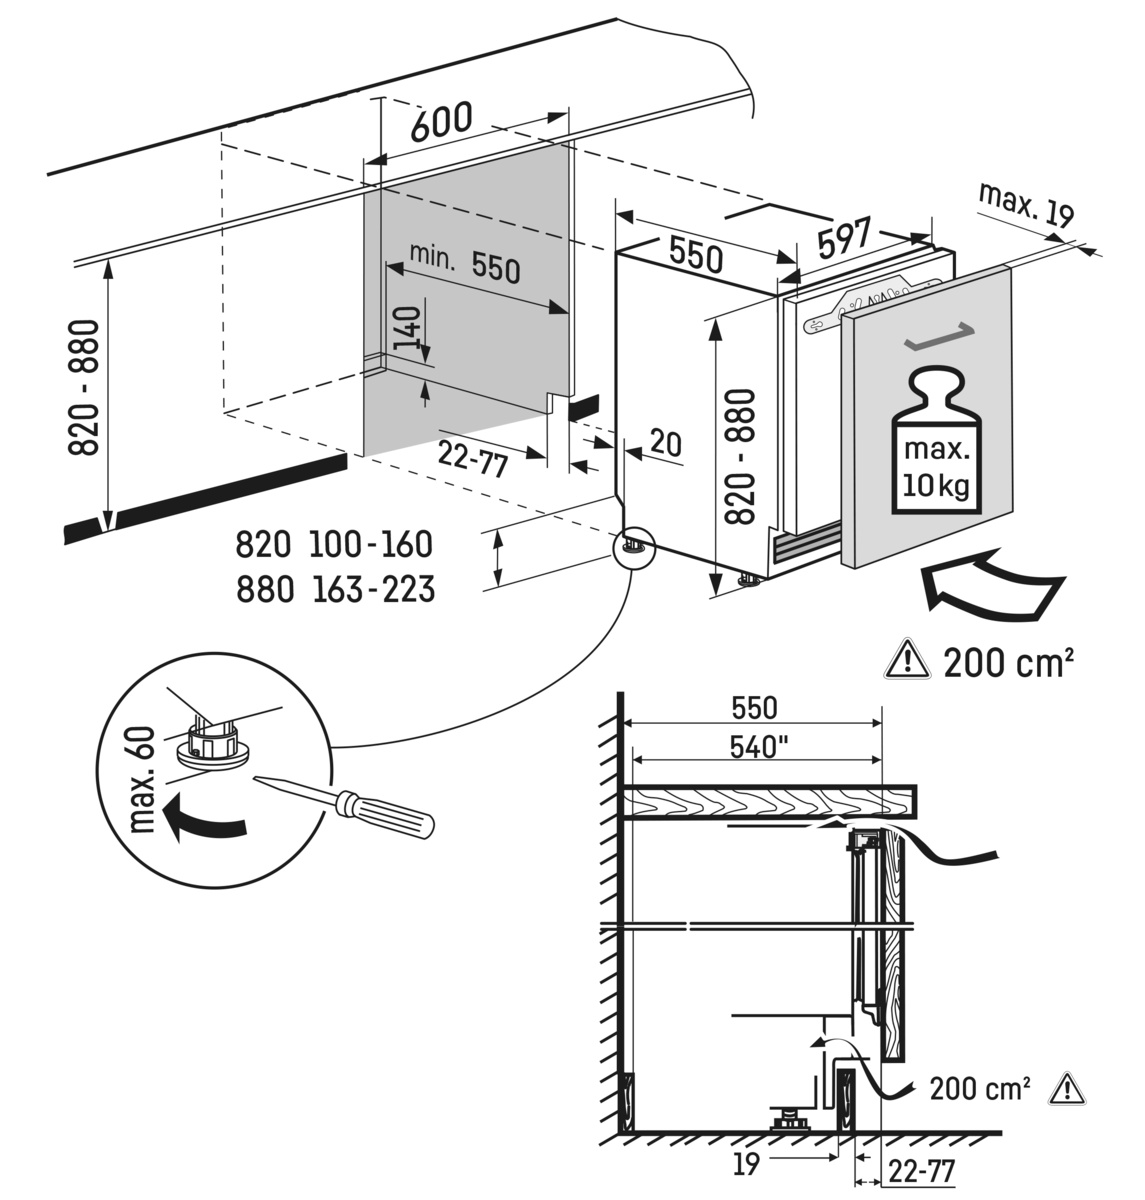 Maattekening LIEBHERR koelkast onderbouw UIKo 1550-25